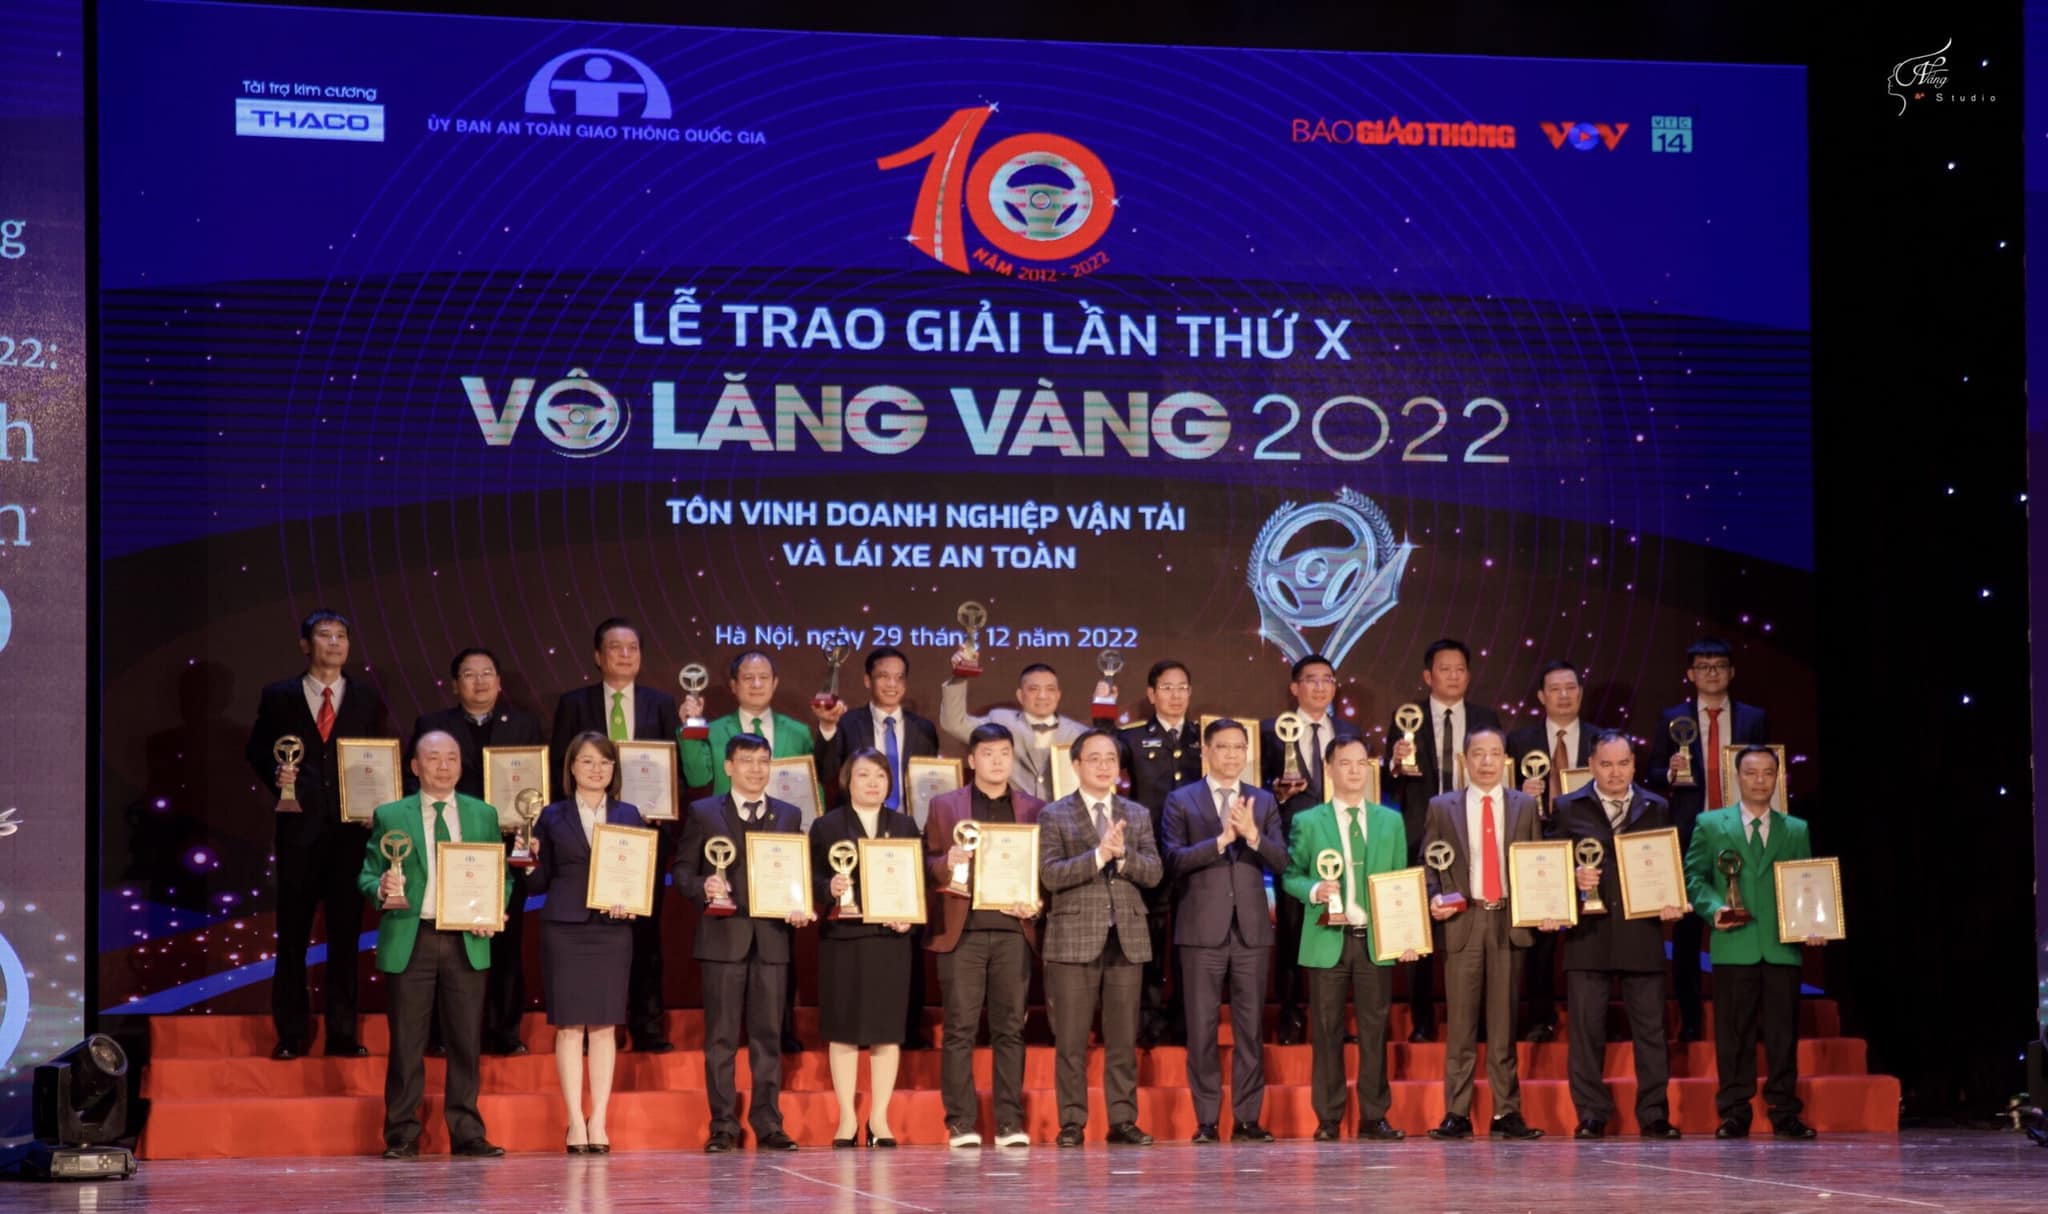 Taxi Bình An vinh dự đạt giải thưởng “Vô lăng vàng” dành cho doanh nghiệp